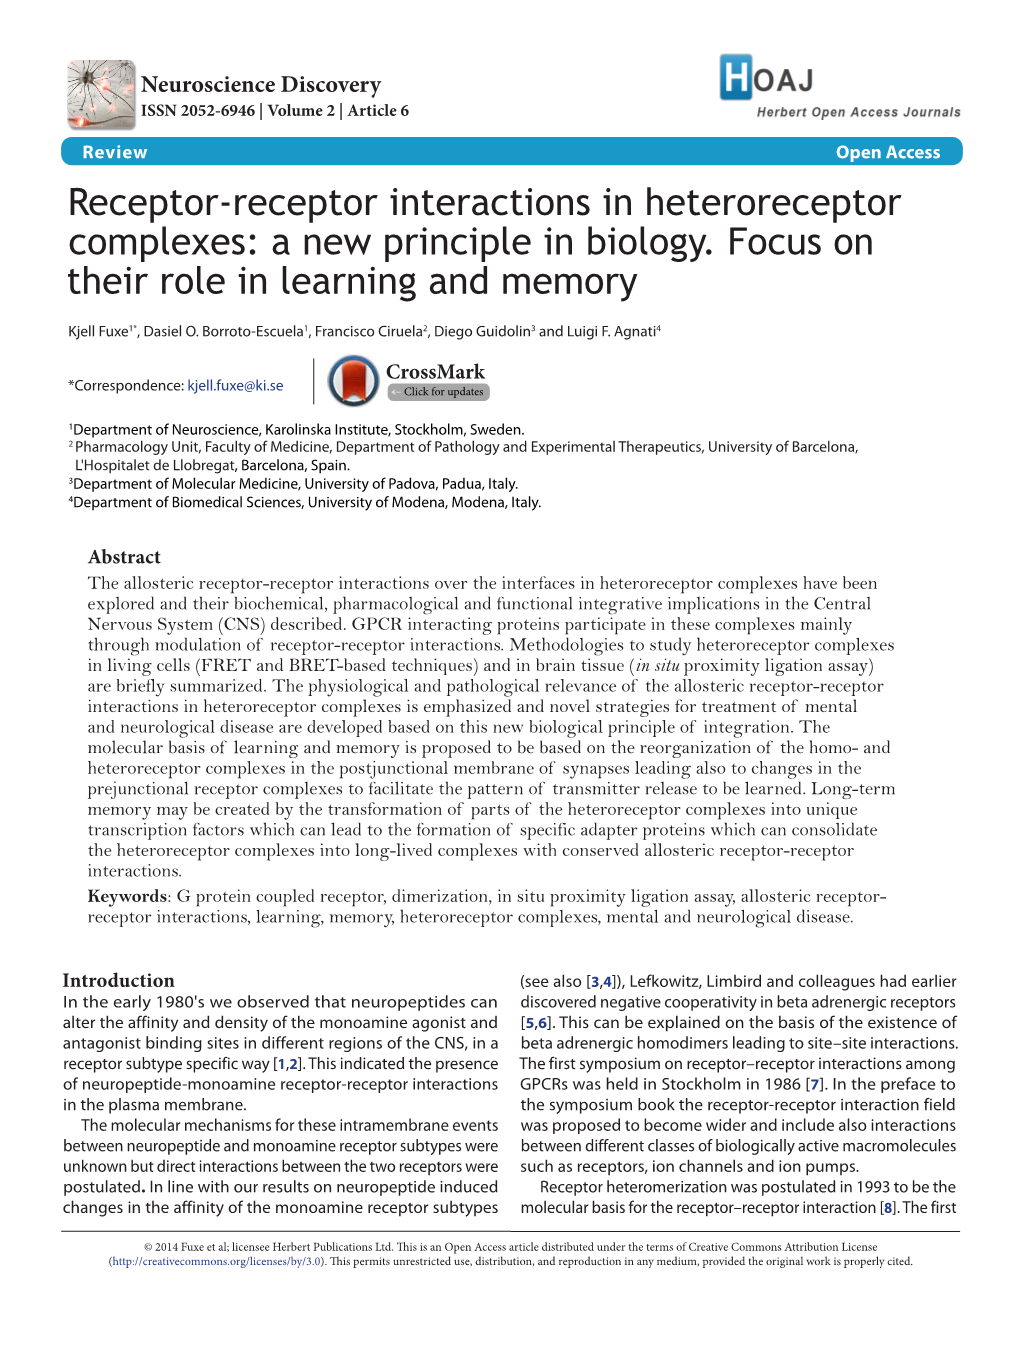 Receptor-Receptor Interactions in Heteroreceptor Complexes: a New Principle in Biology